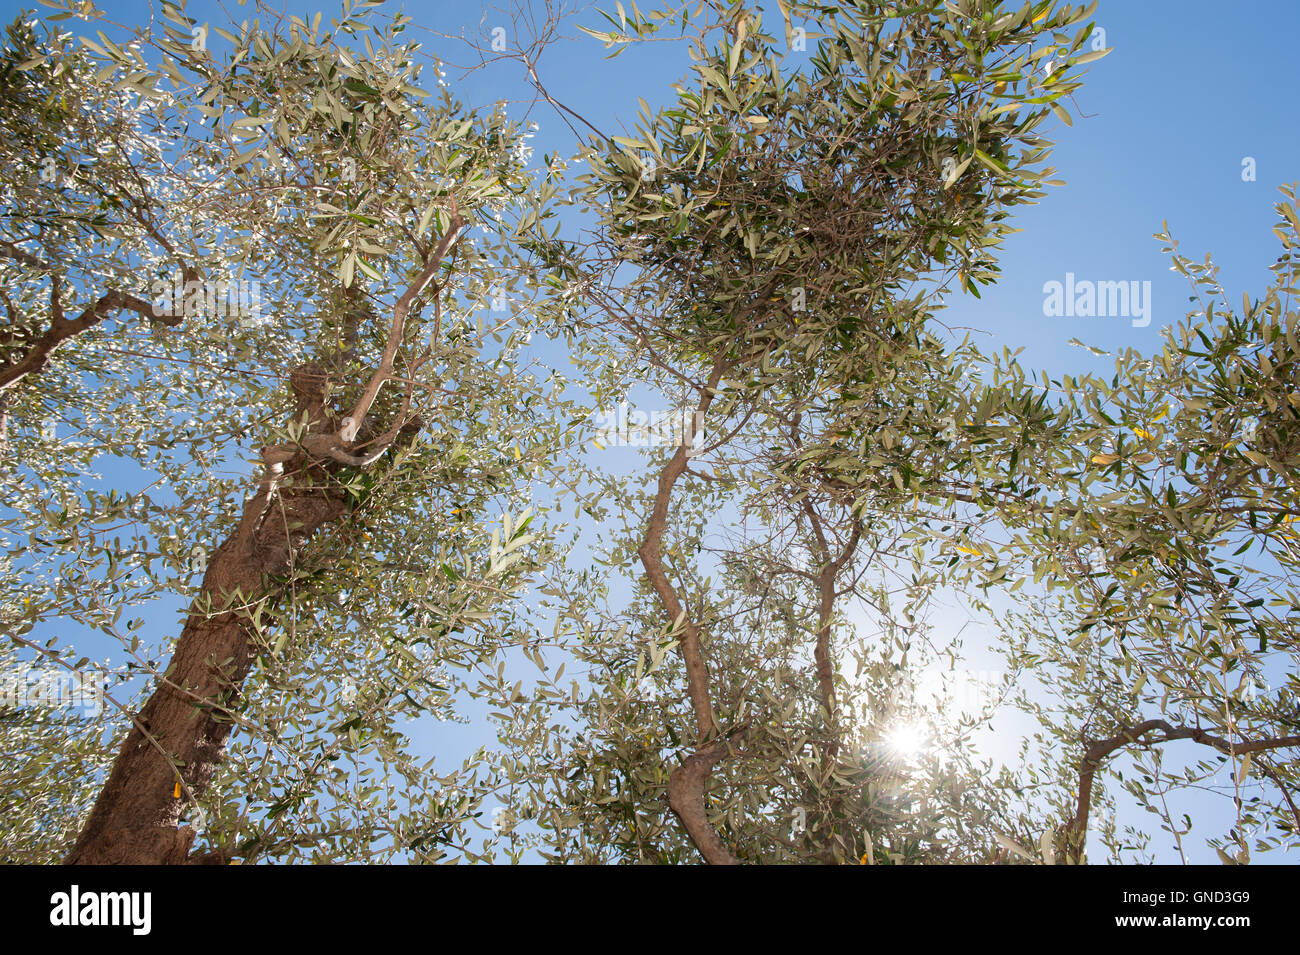 Albero di olivo dettaglio ramo con alcune olive verdi pronti per la raccolta cielo blu in background Foto Stock